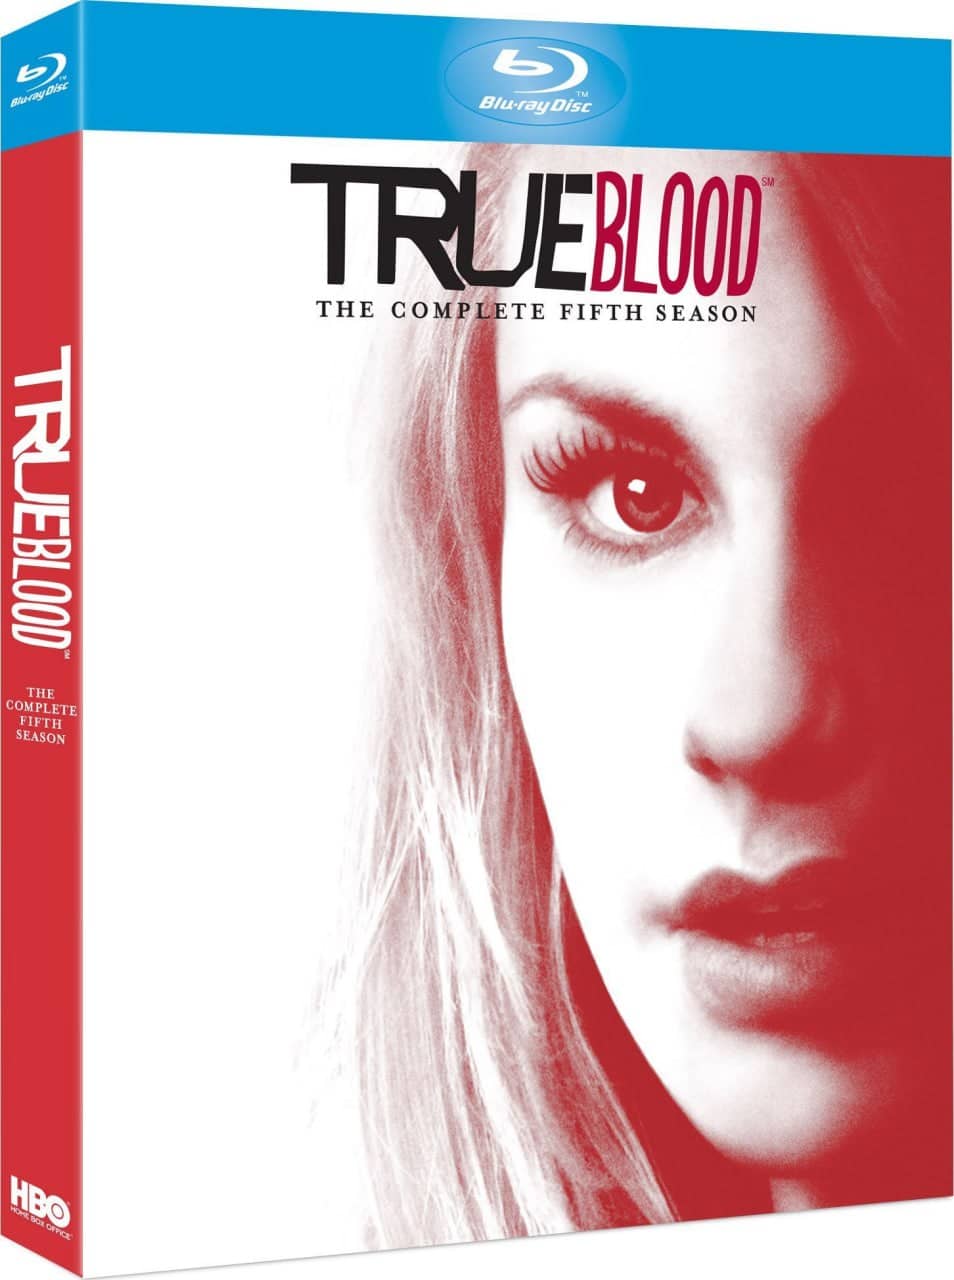 【在线免和谐】真爱如血 第五季 True Blood Season 5 (2010)